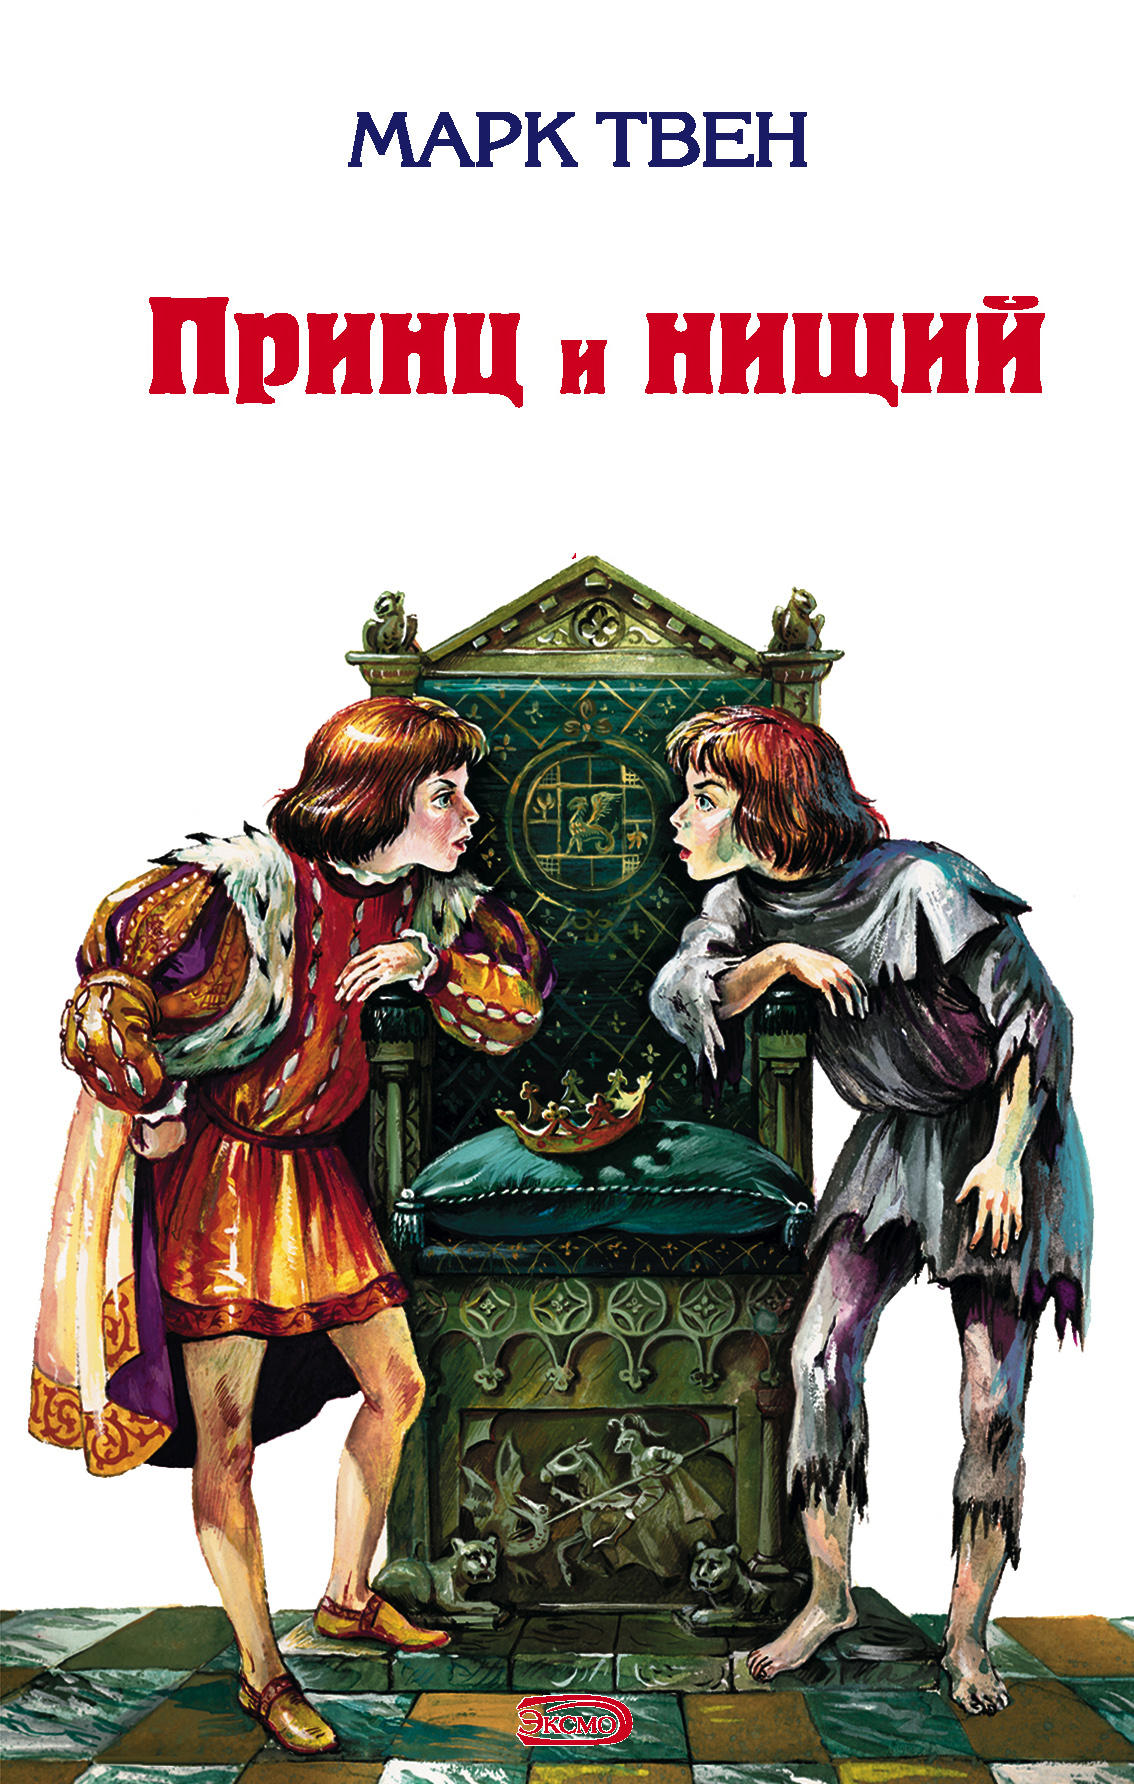 ТОП-11 лучших книг в жанре "Исторические романы"